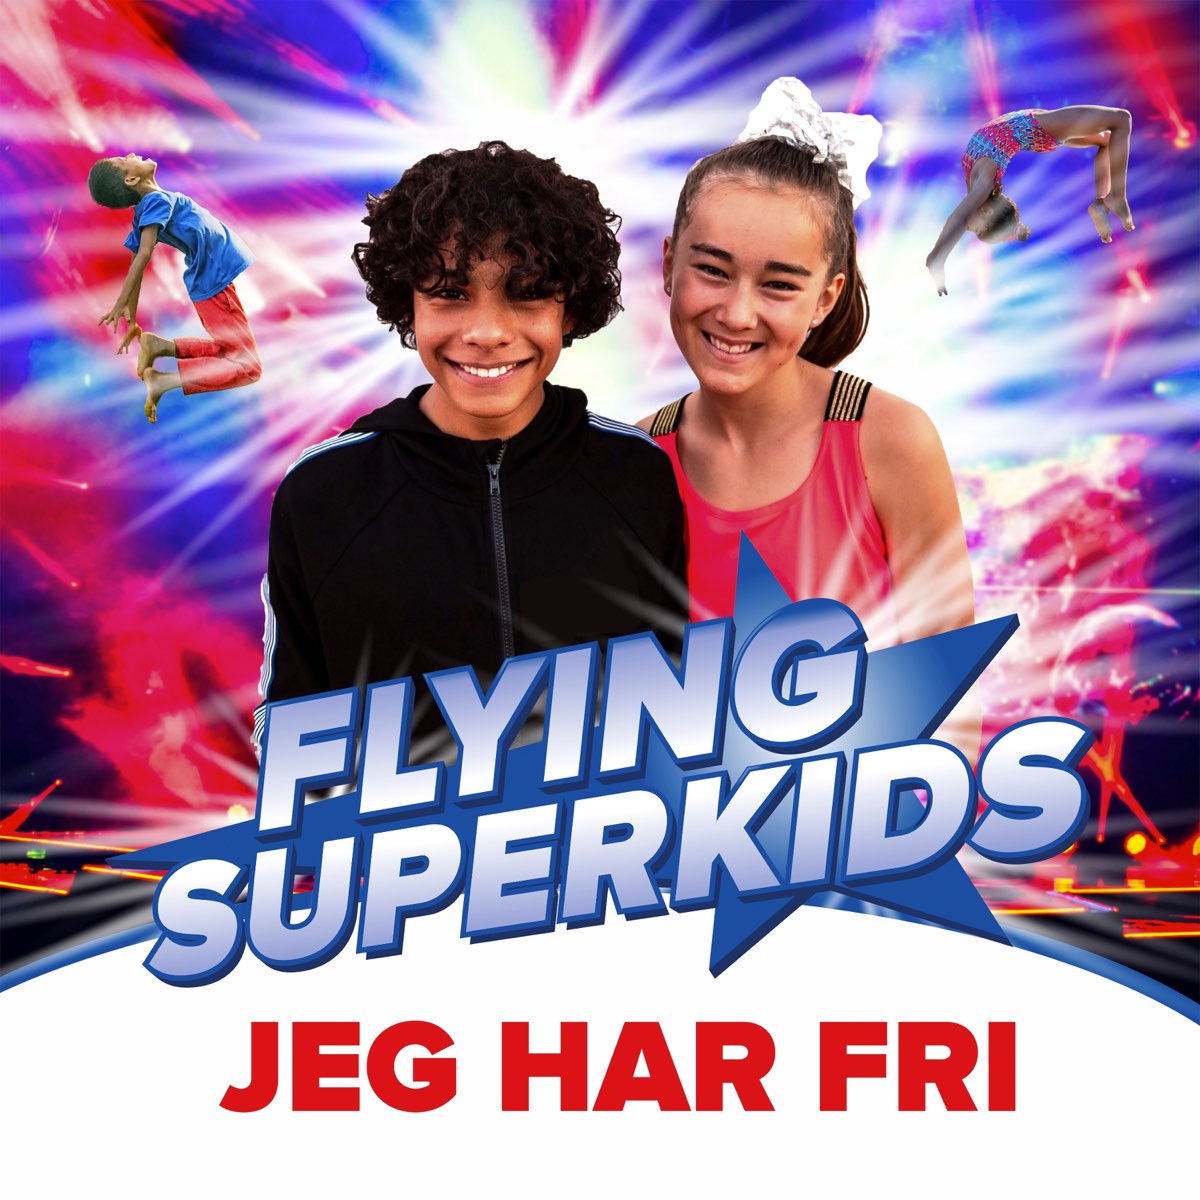 Jeg har fri - Single by Flying Superkids on Apple Music